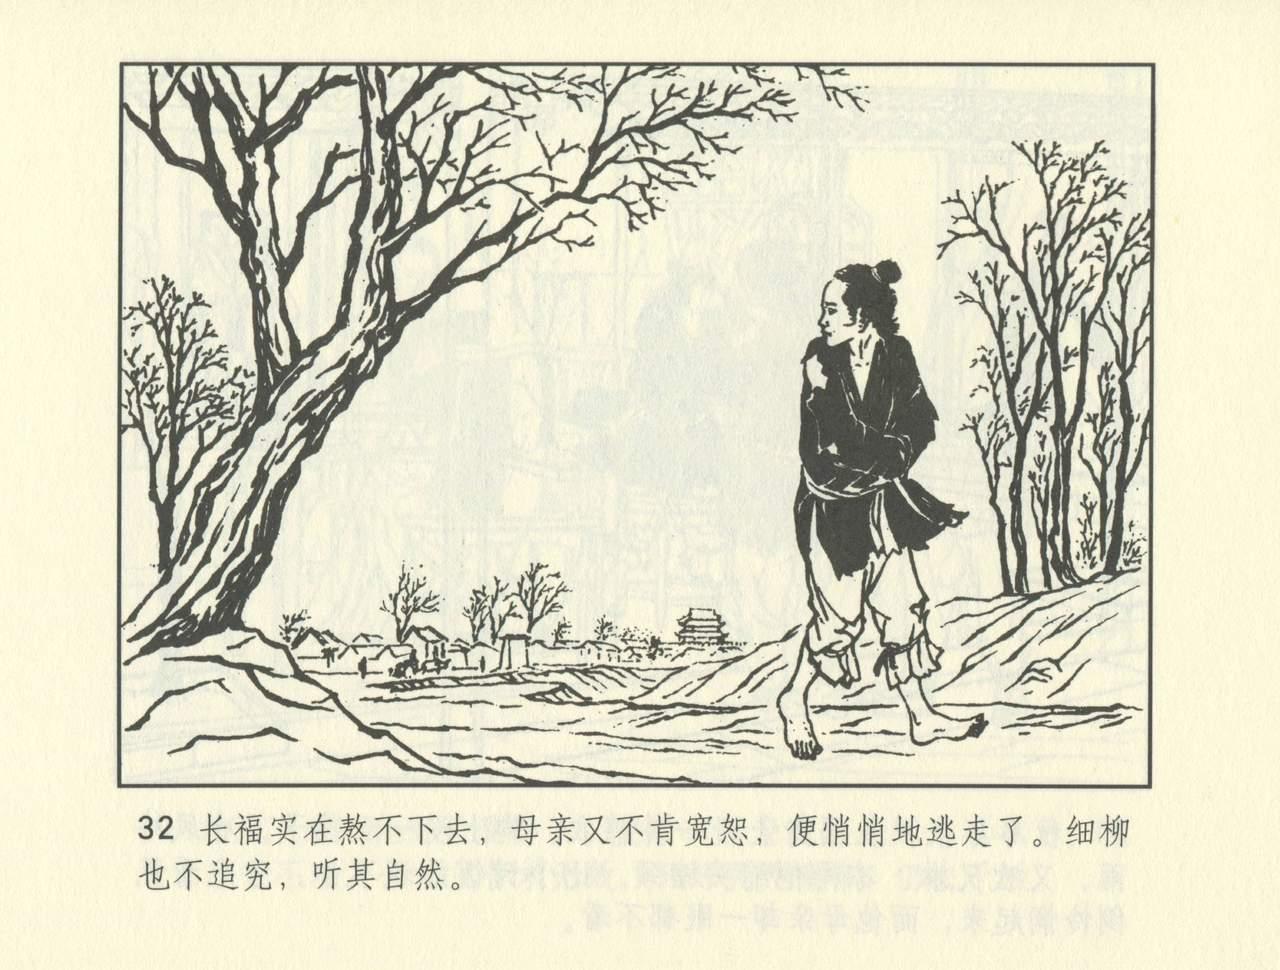 聊斋志异 张玮等绘 天津人民美术出版社 卷二十一 ~ 三十 504